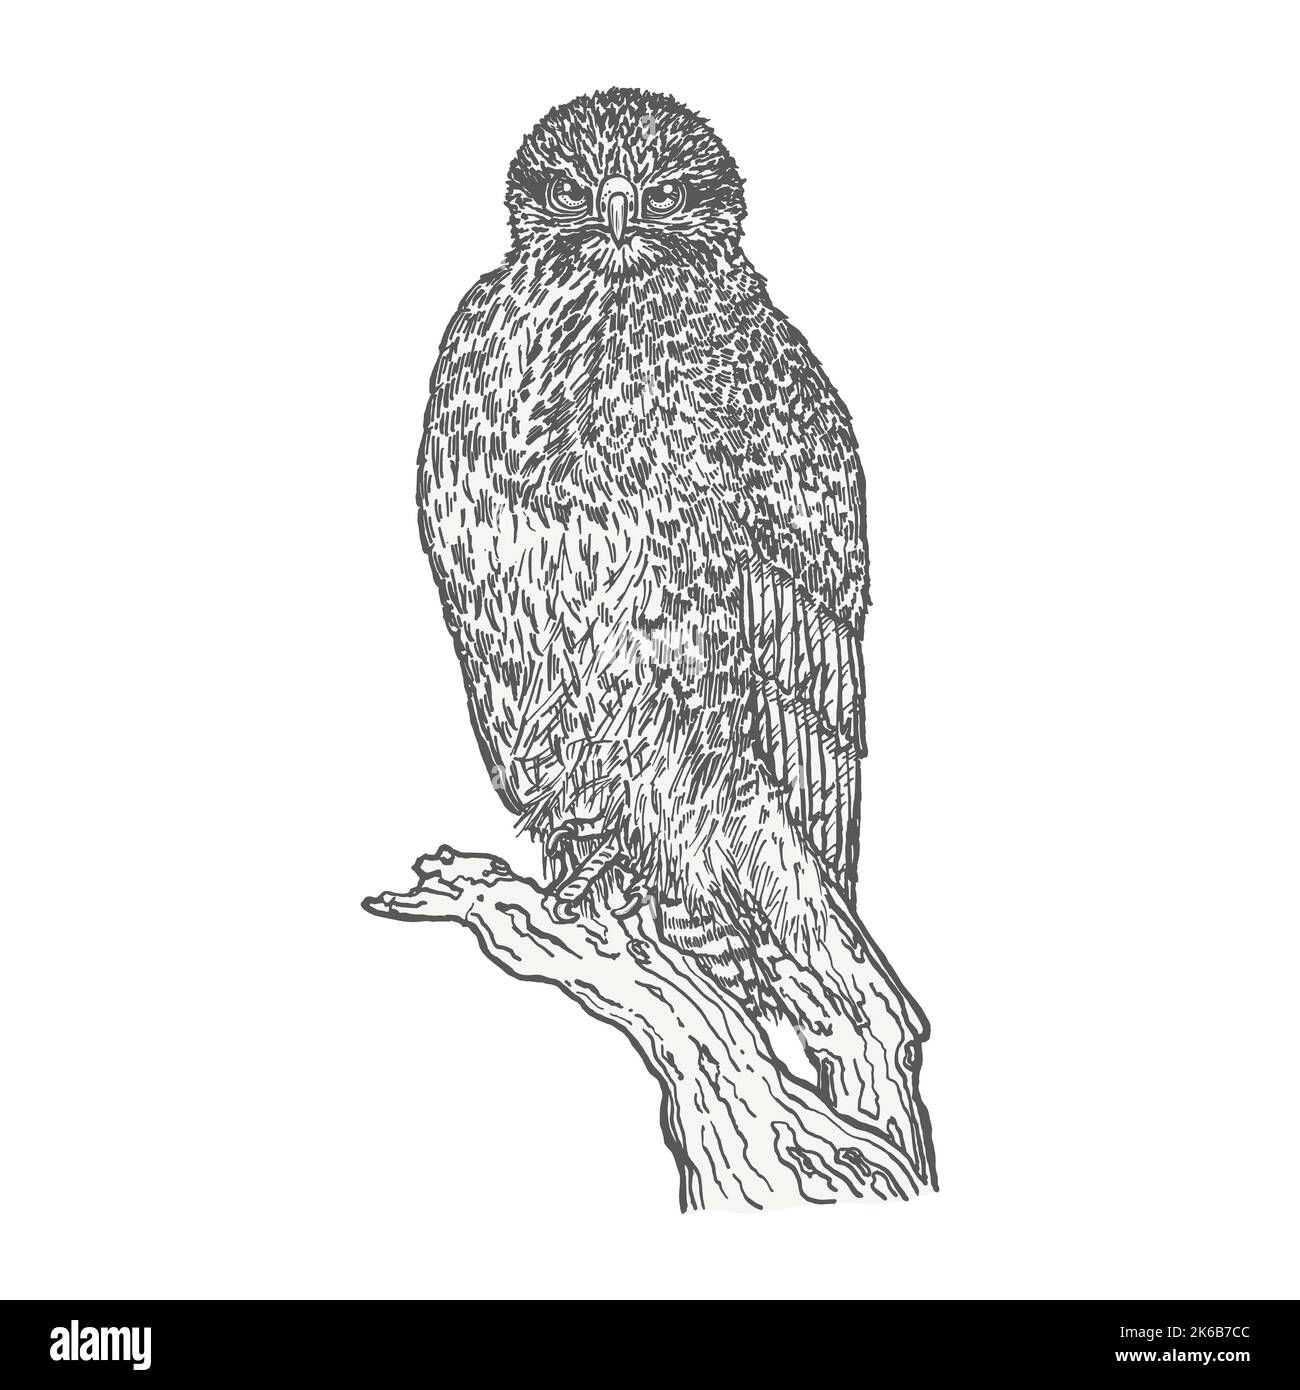 Uccello predatore seduto su un ceppo. Disegnata a mano con contorni a penna e inchiostro. Schizzo di uccello in stile vintage. Illustrazione vettoriale. Illustrazione Vettoriale